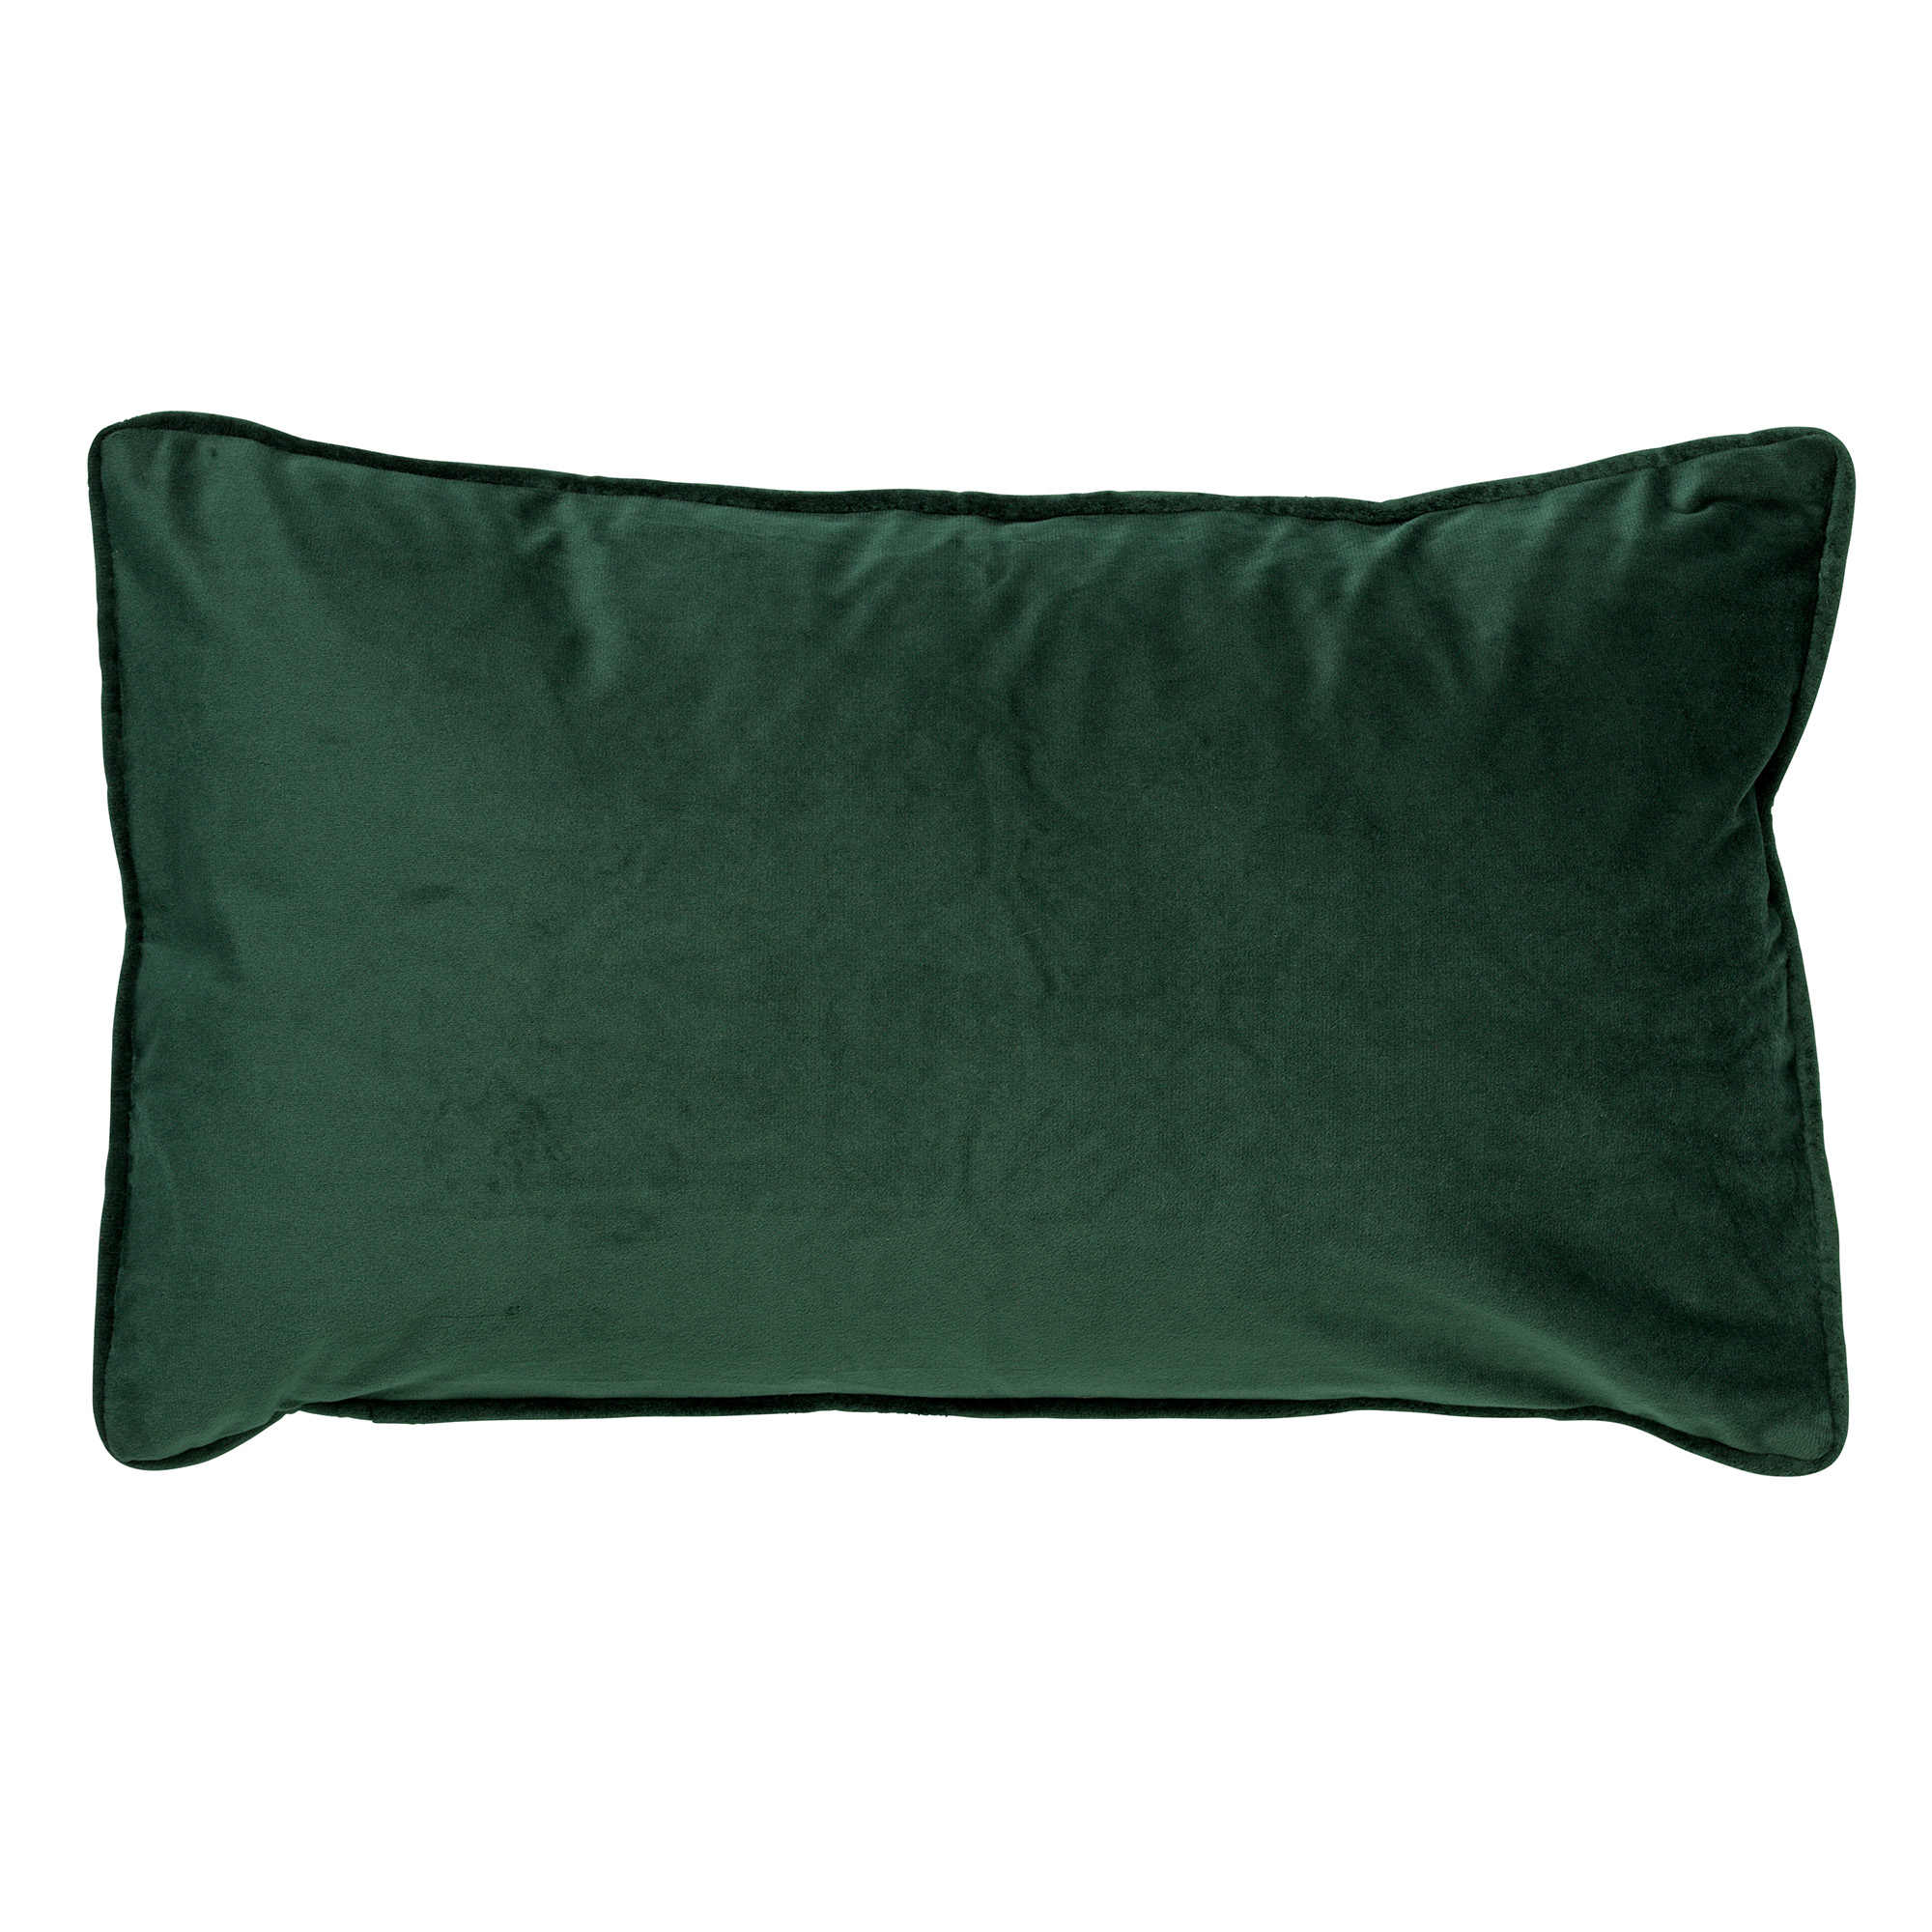 FINN - Cushion 30x50 cm Mountain View - green